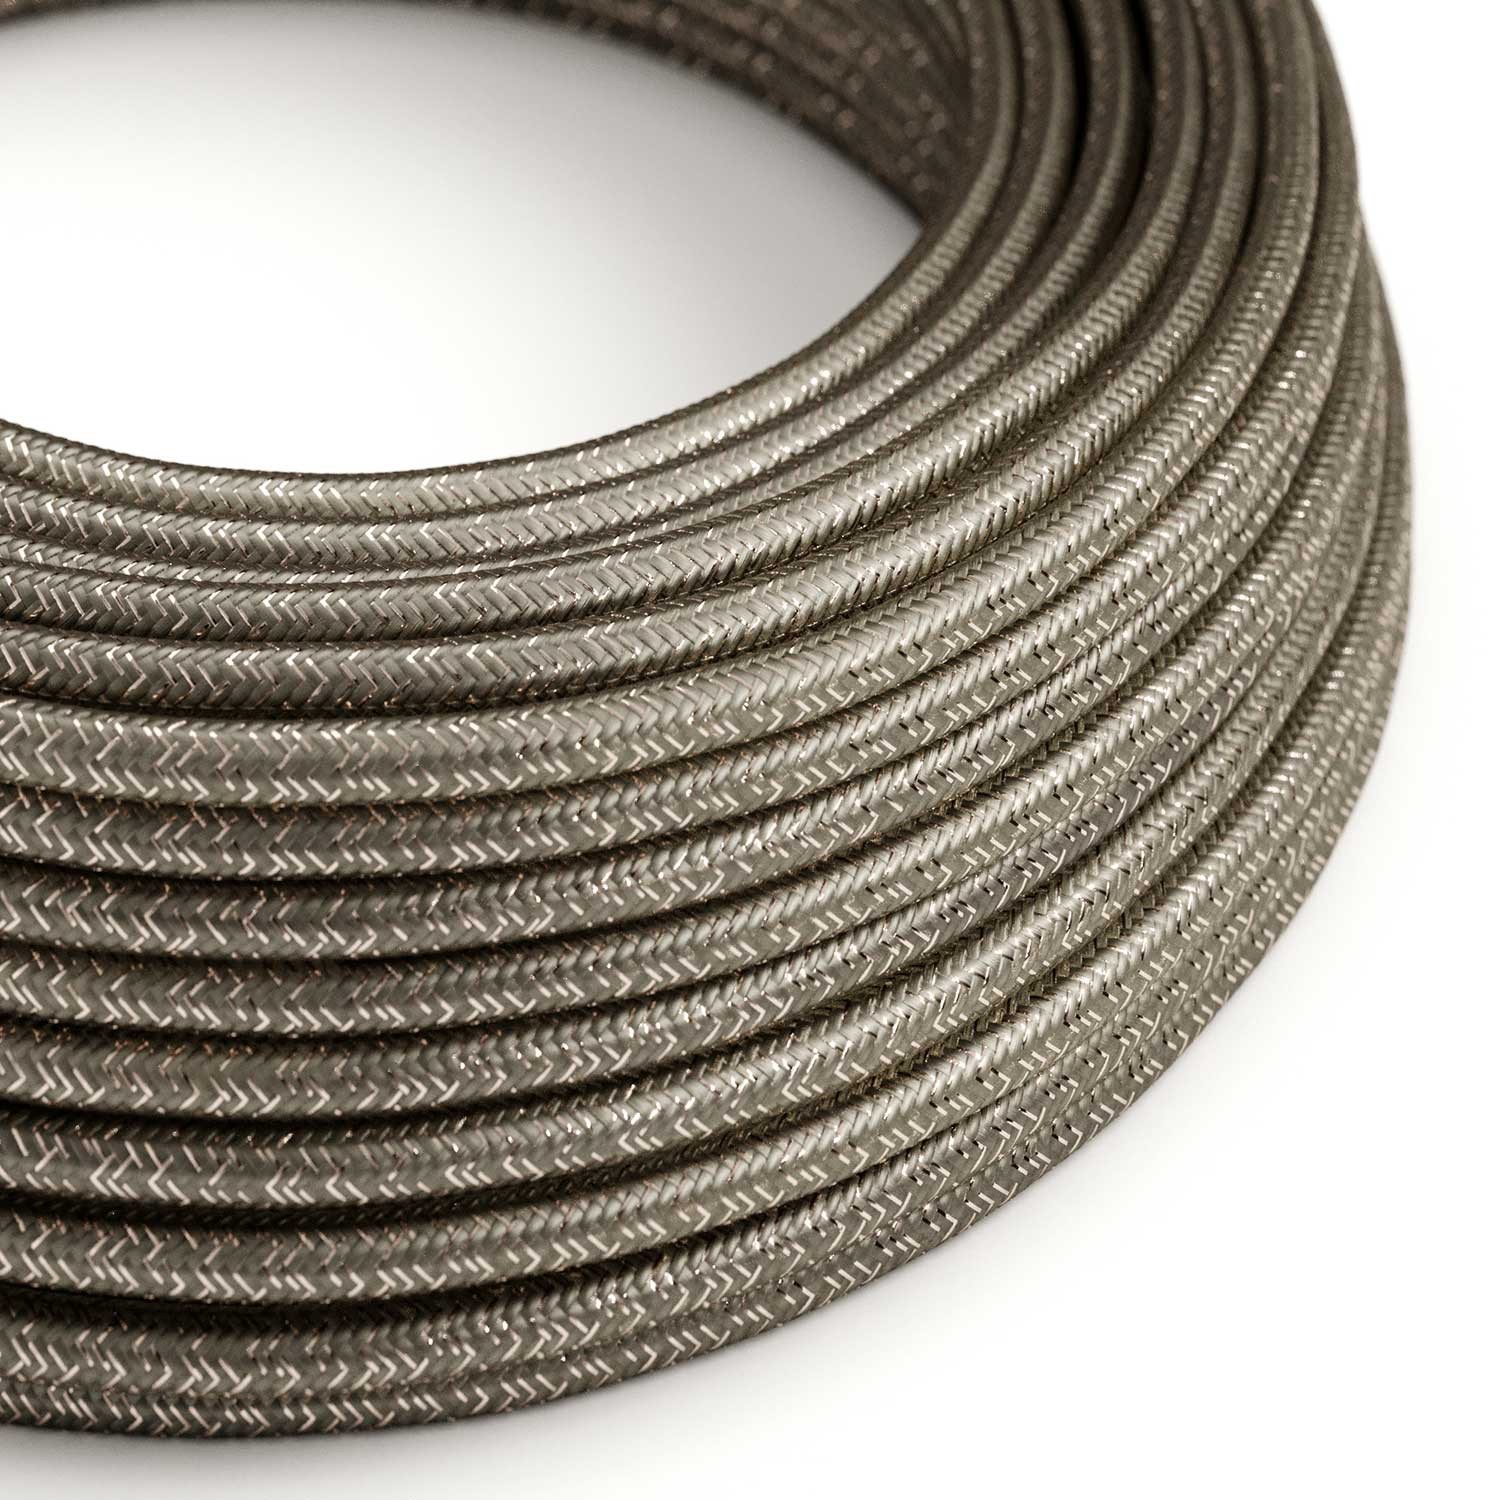 Textilkabel, grau glänzend, mit Glitzer-Effekt - Das Original von Creative-Cables - RL03 rund 2x0,75mm / 3x0,75mm